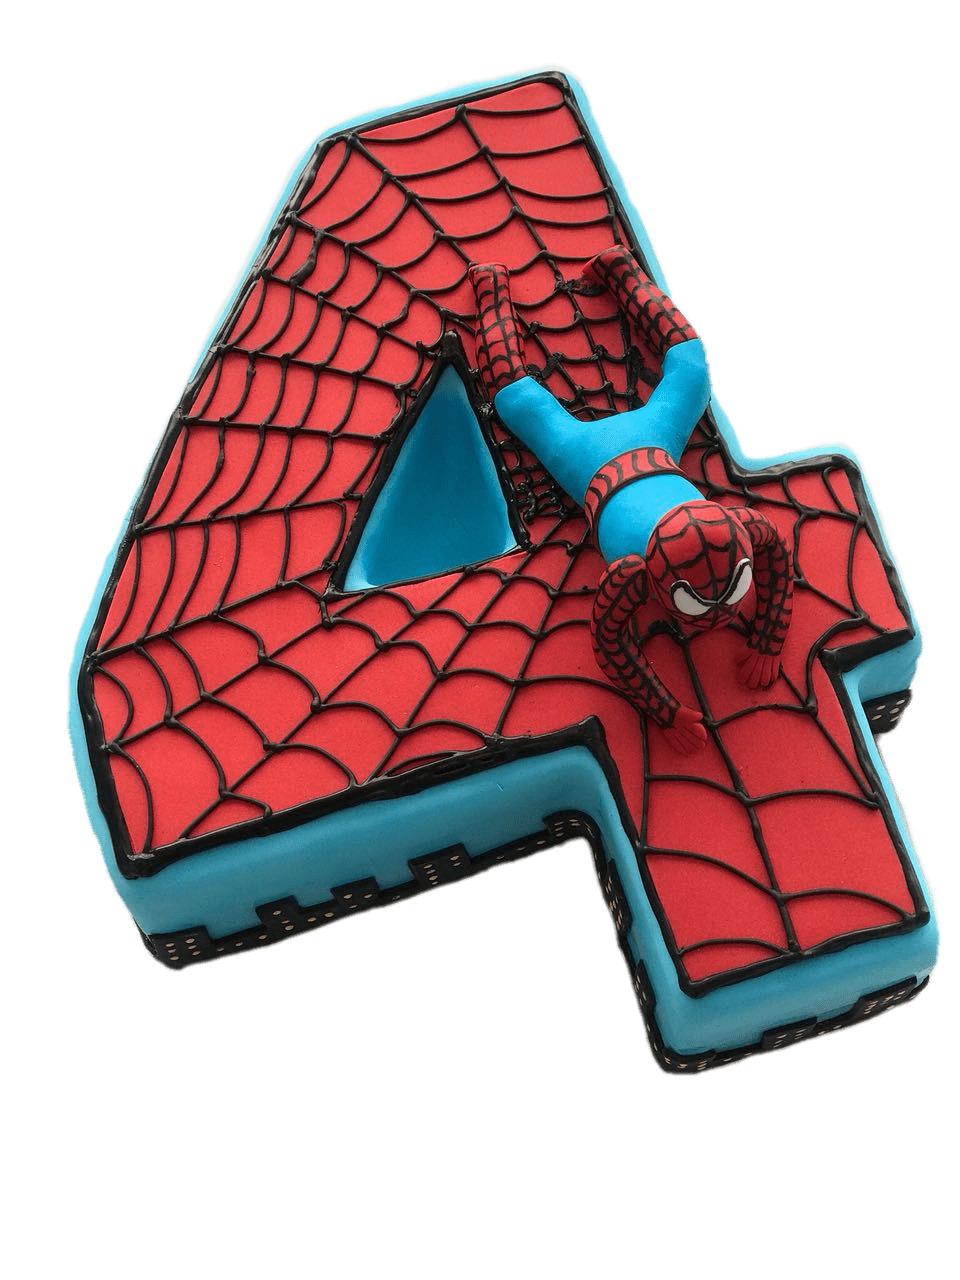 Spiderman Number 4 Cake png transparent